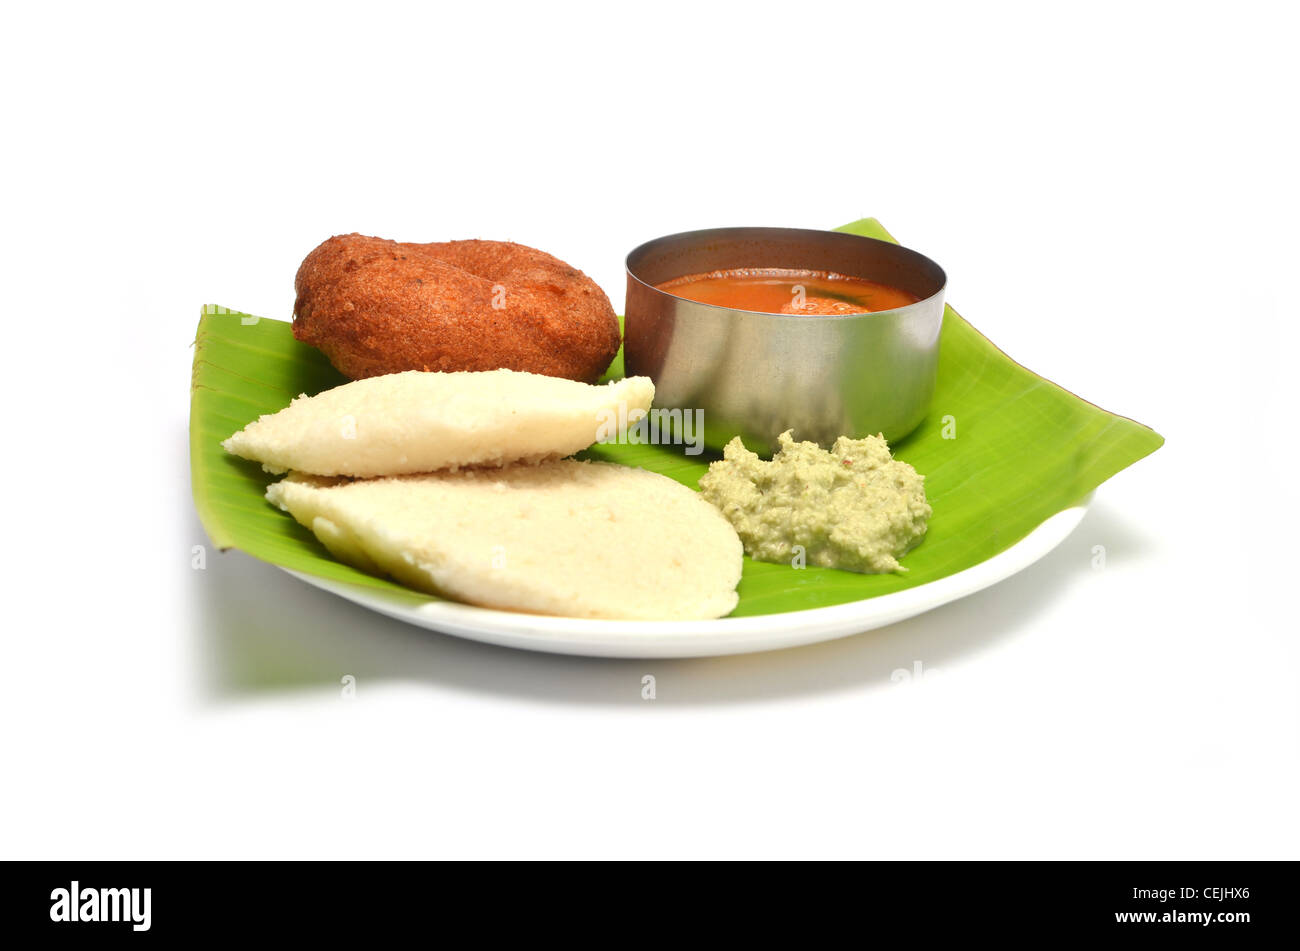 Idli sambhar vada, et chutney, plat indien du sud servi sur des feuilles de banane, isolé sur fond blanc Banque D'Images